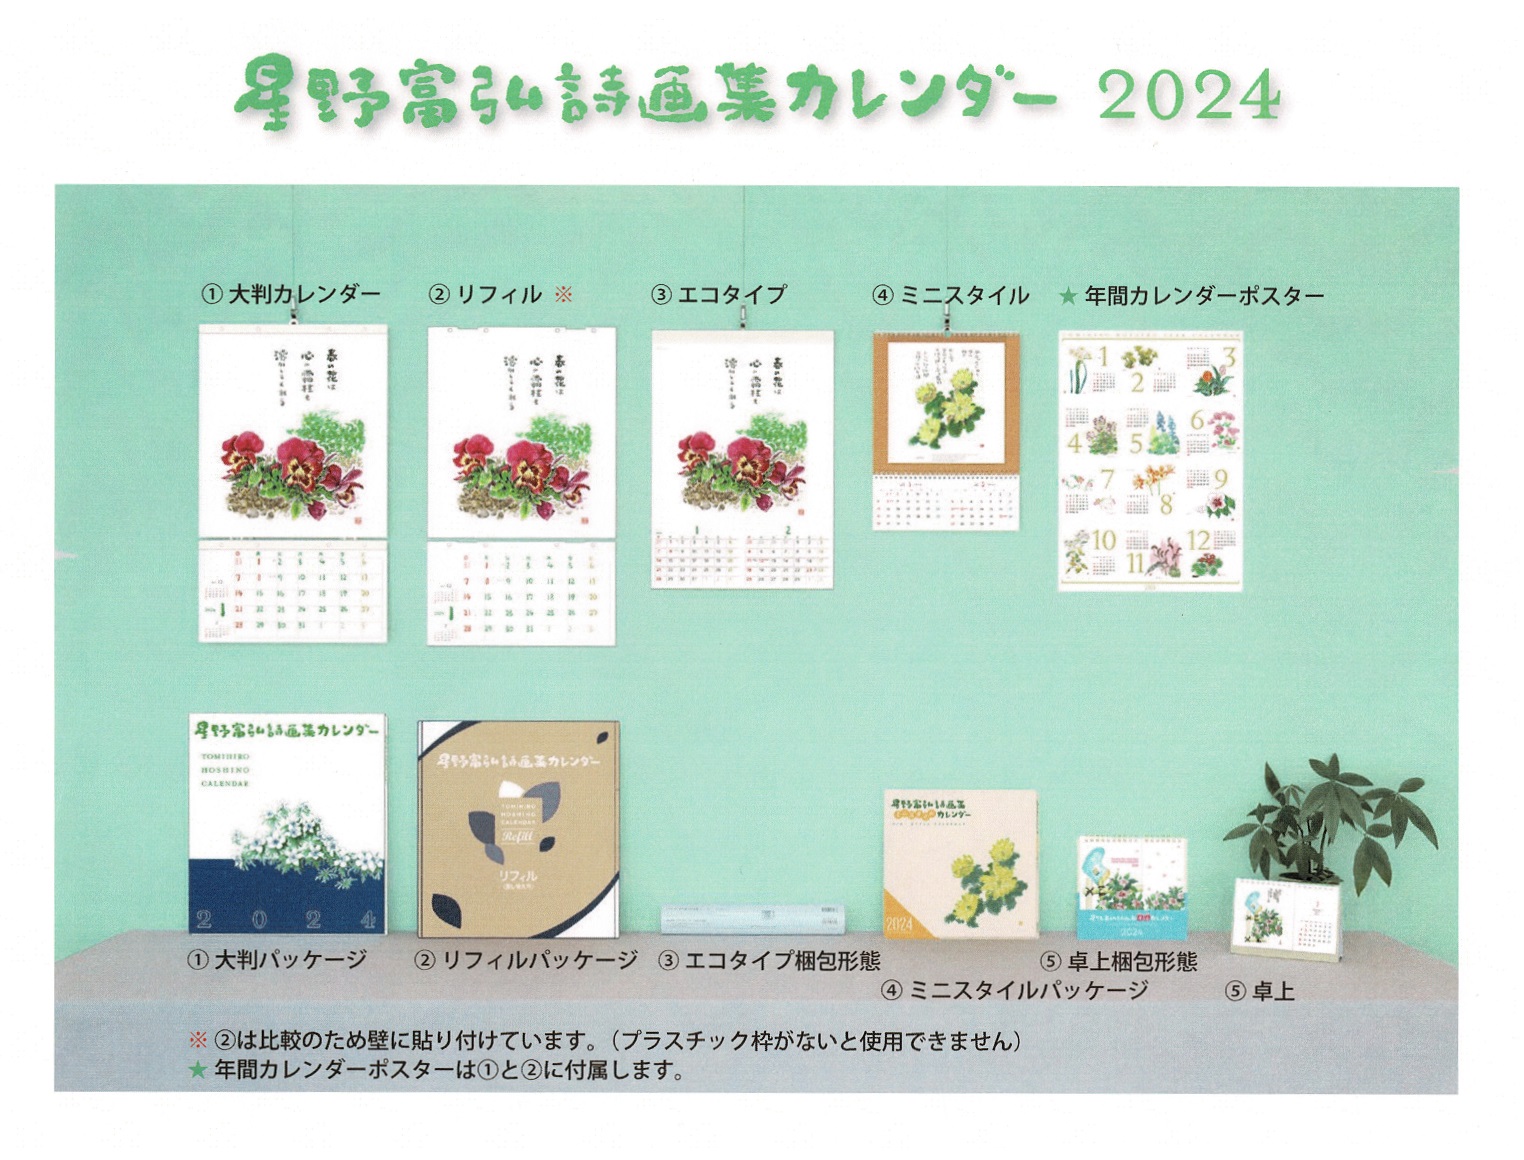 星野富弘誌画集カレンダー(2024年) 全て